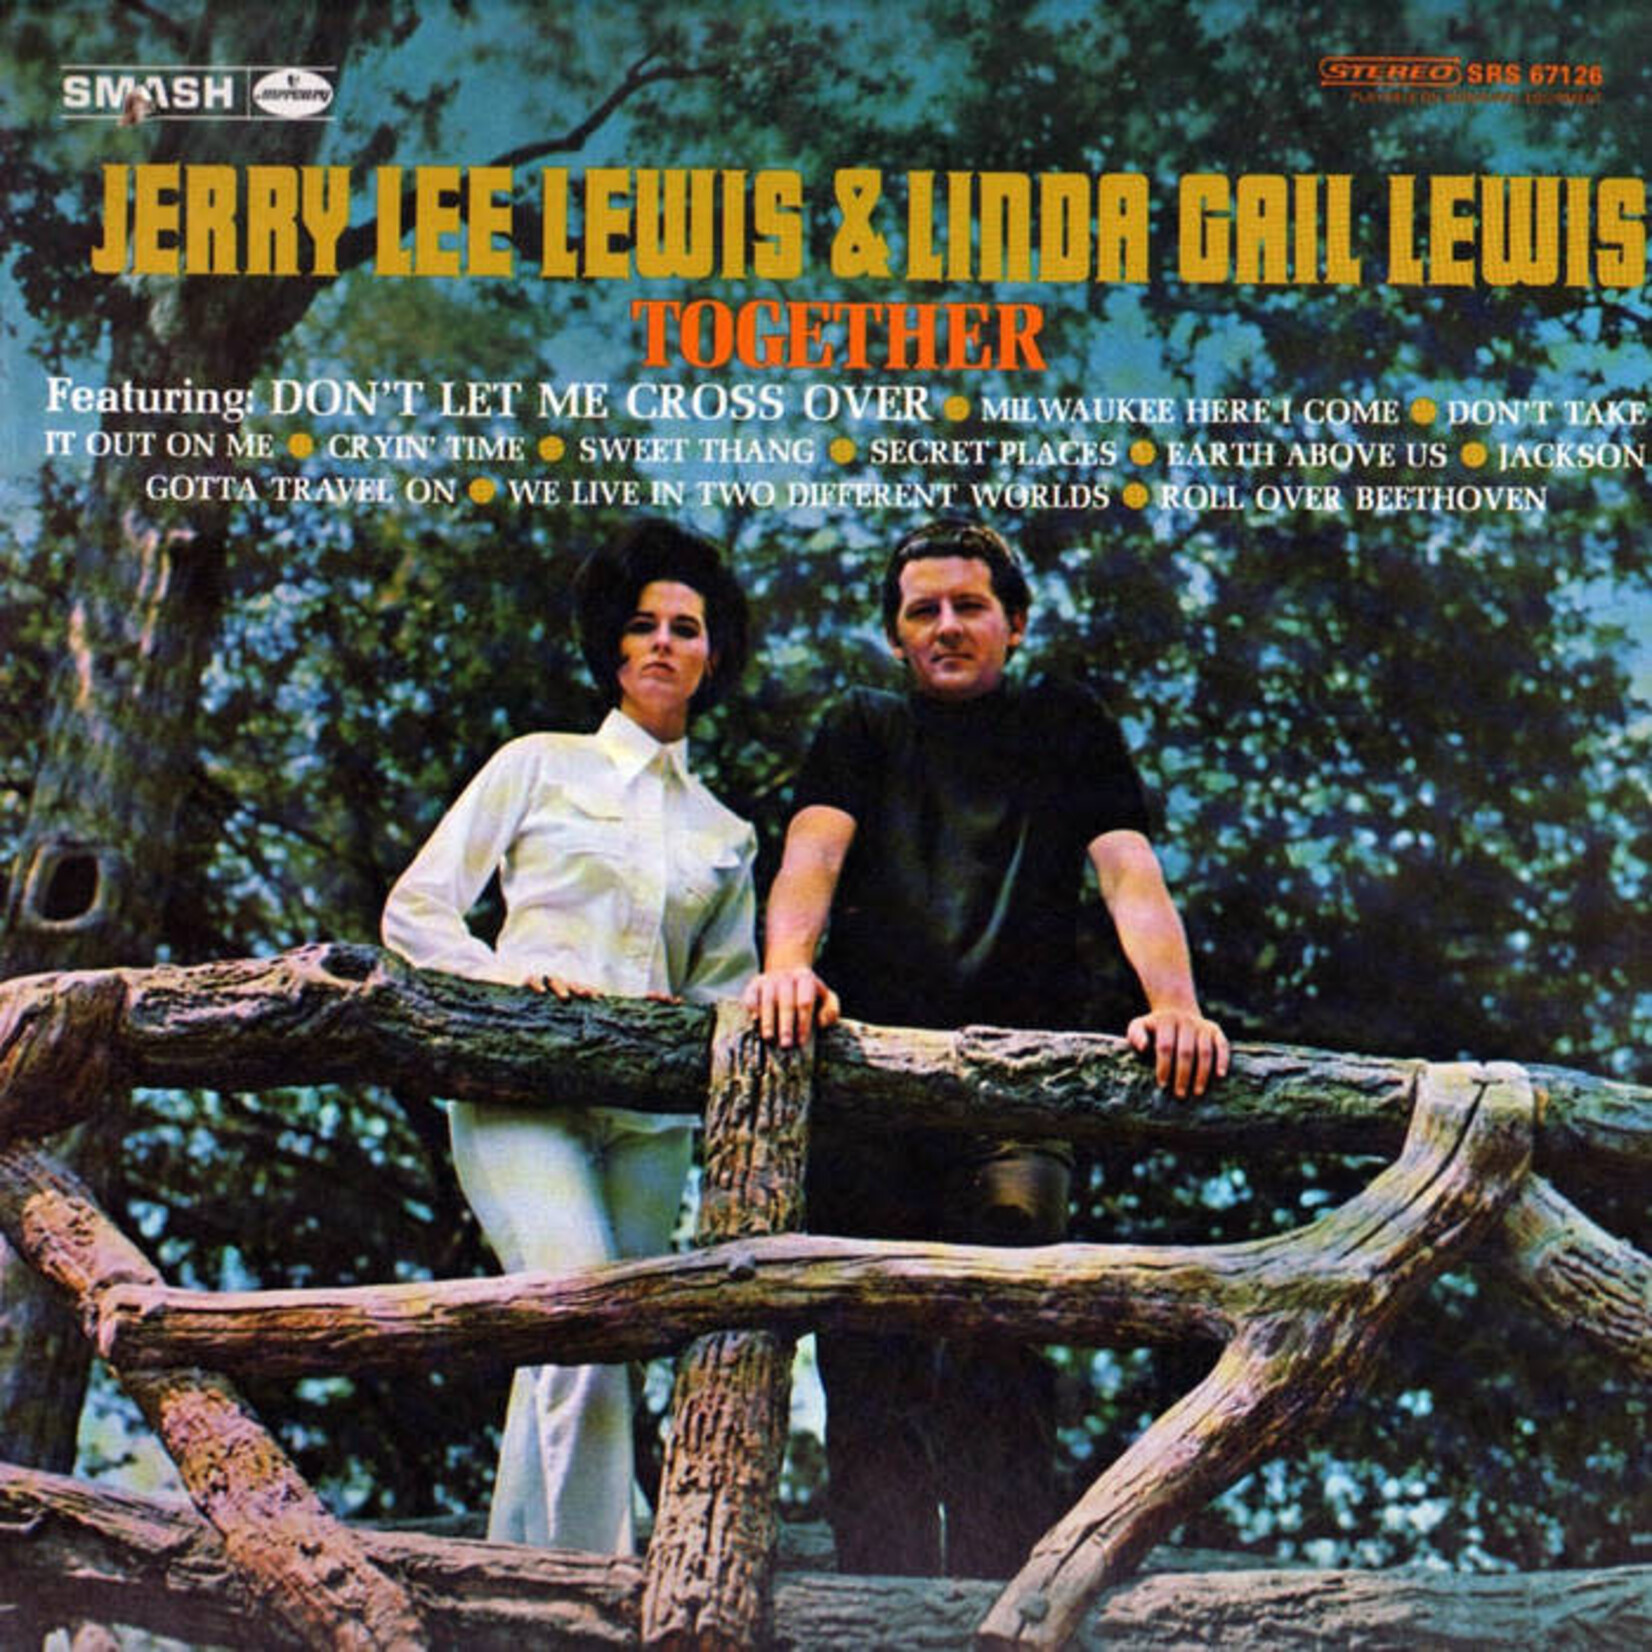 Lewis, Jerry Lee & Linda Carl Lewis: Together [VINTAGE]